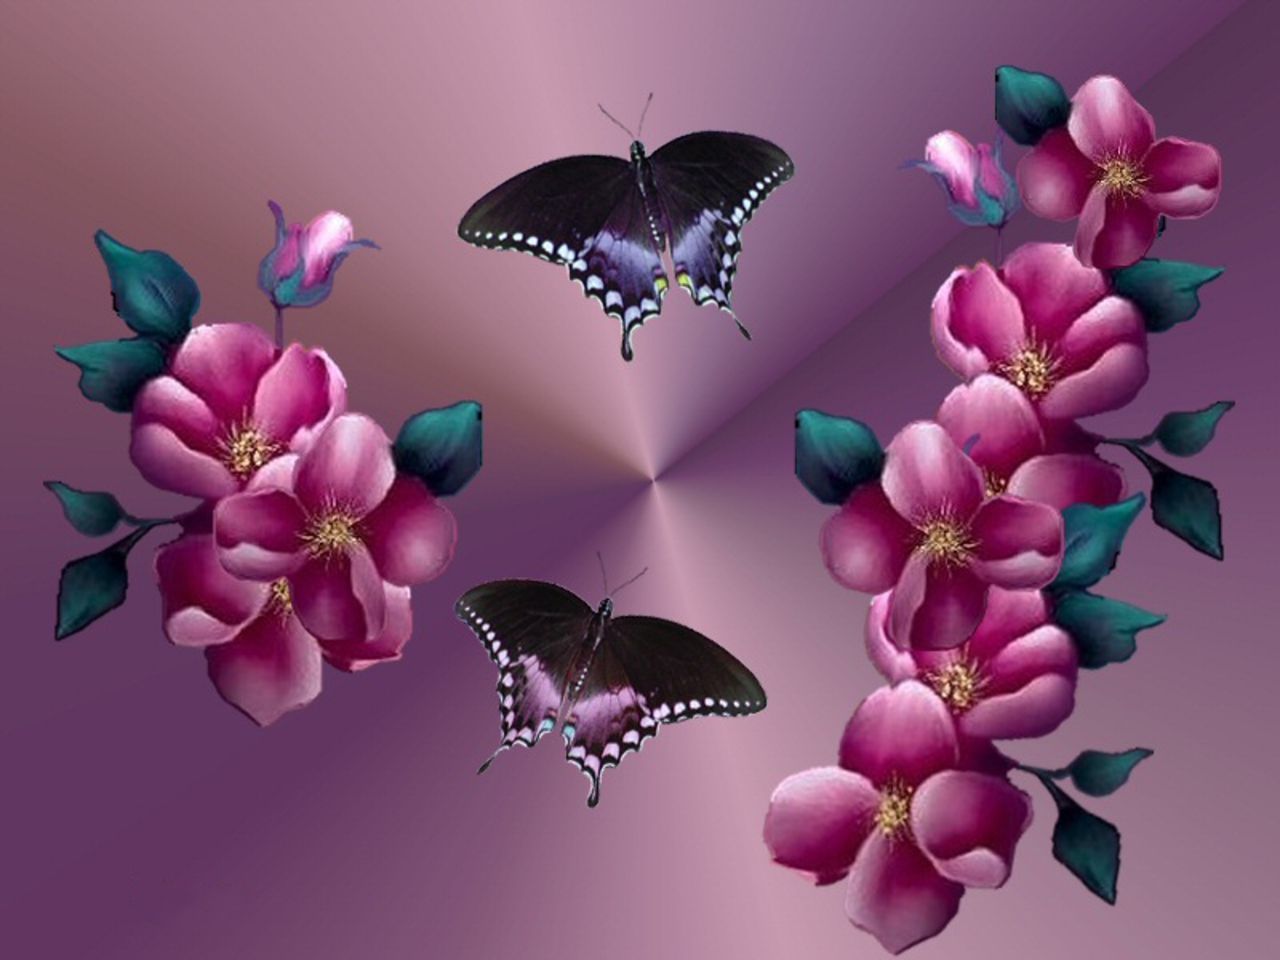 Скачать обои бесплатно Природа, Цветок, Бабочка, Художественные картинка на рабочий стол ПК